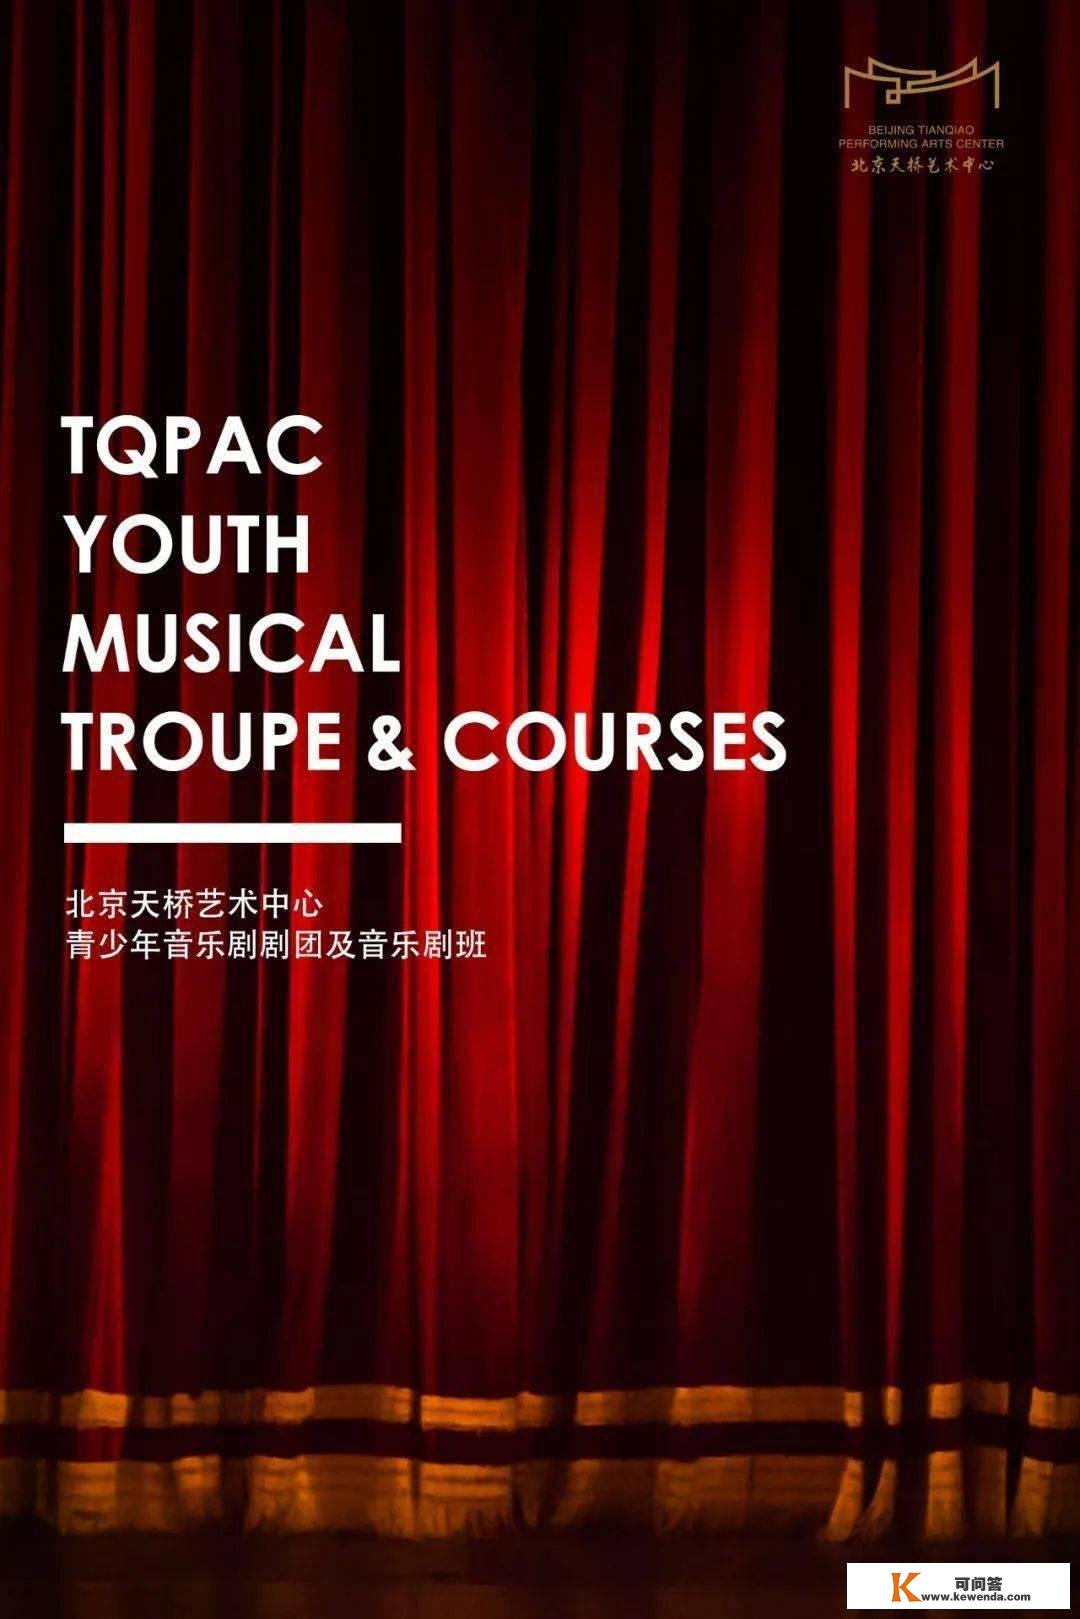 招募 | 北京天桥艺术中心青少年音乐剧剧团班春季学期报名通道开启！